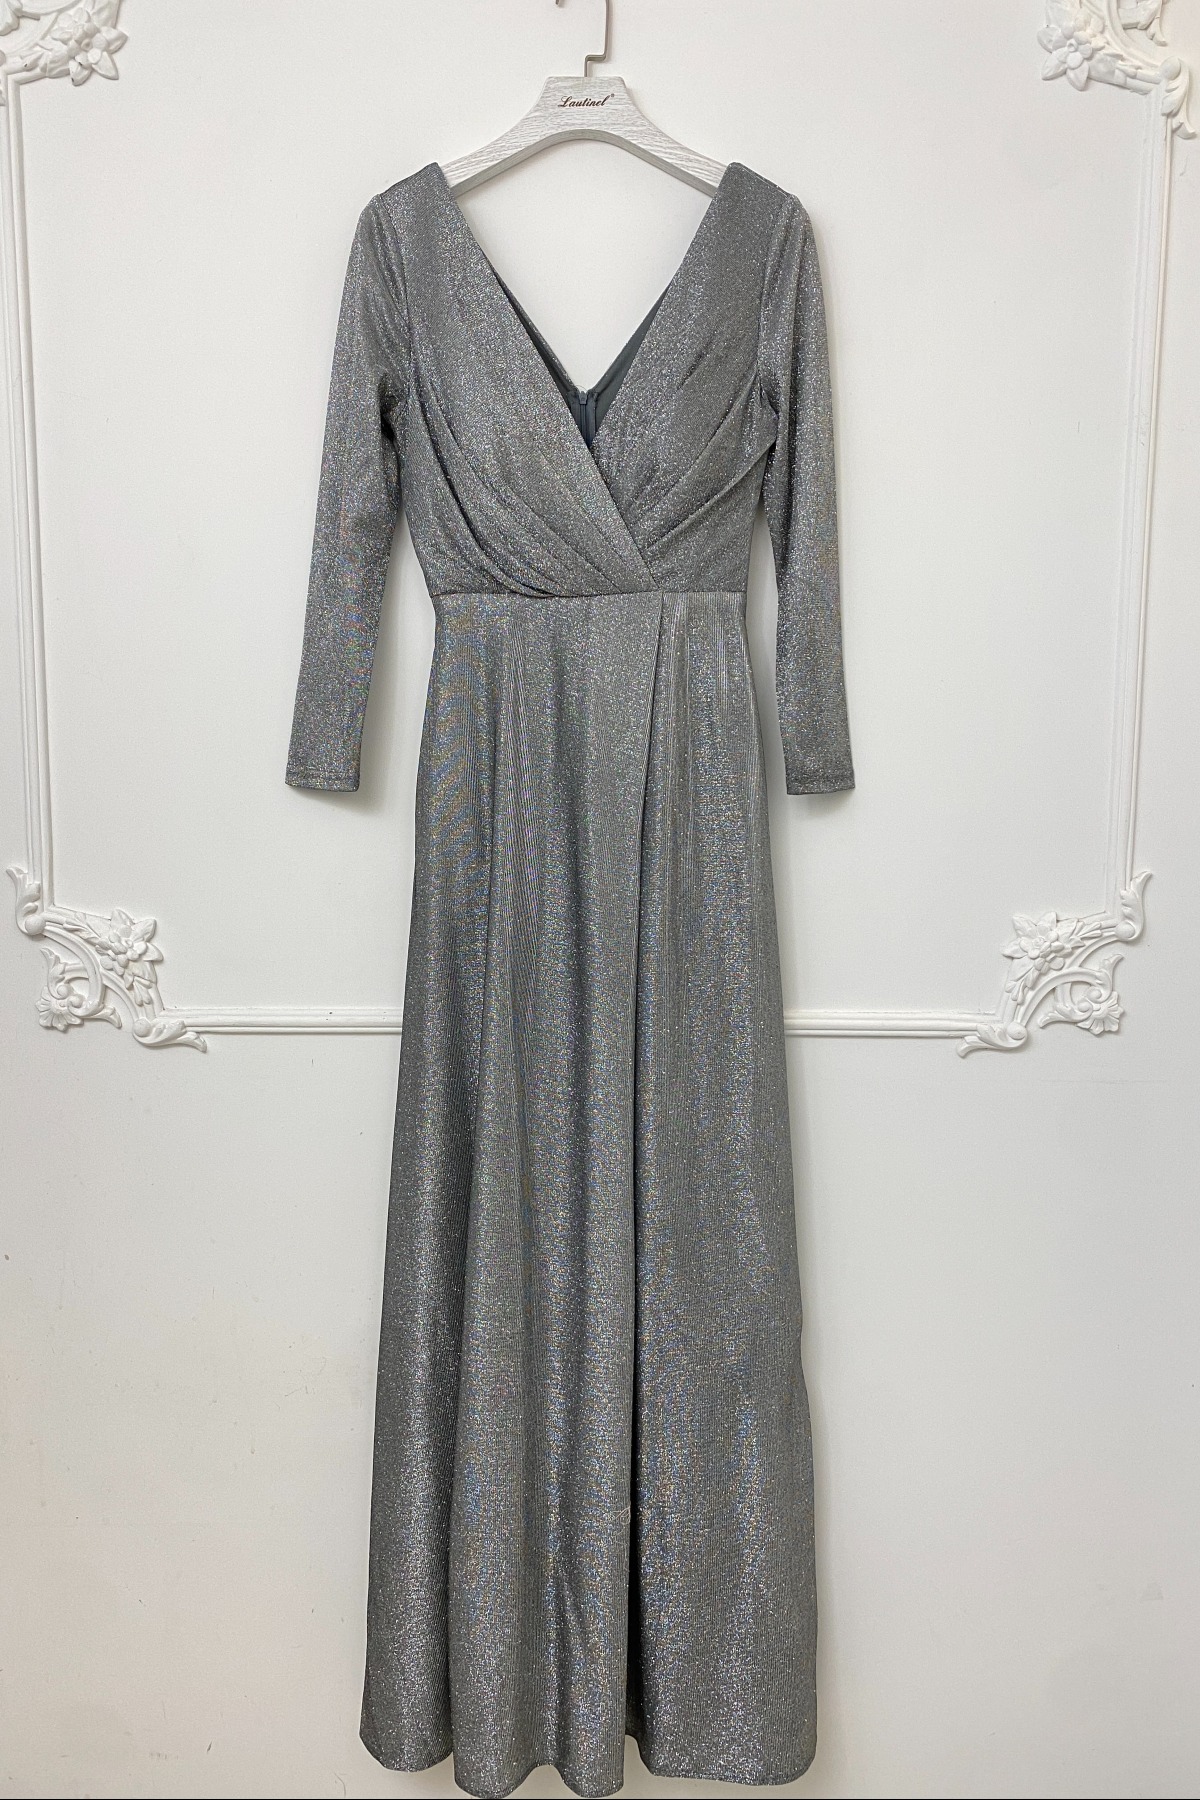 Robes de soirée Femme Argent Lautinel R1828 #c Efashion Paris